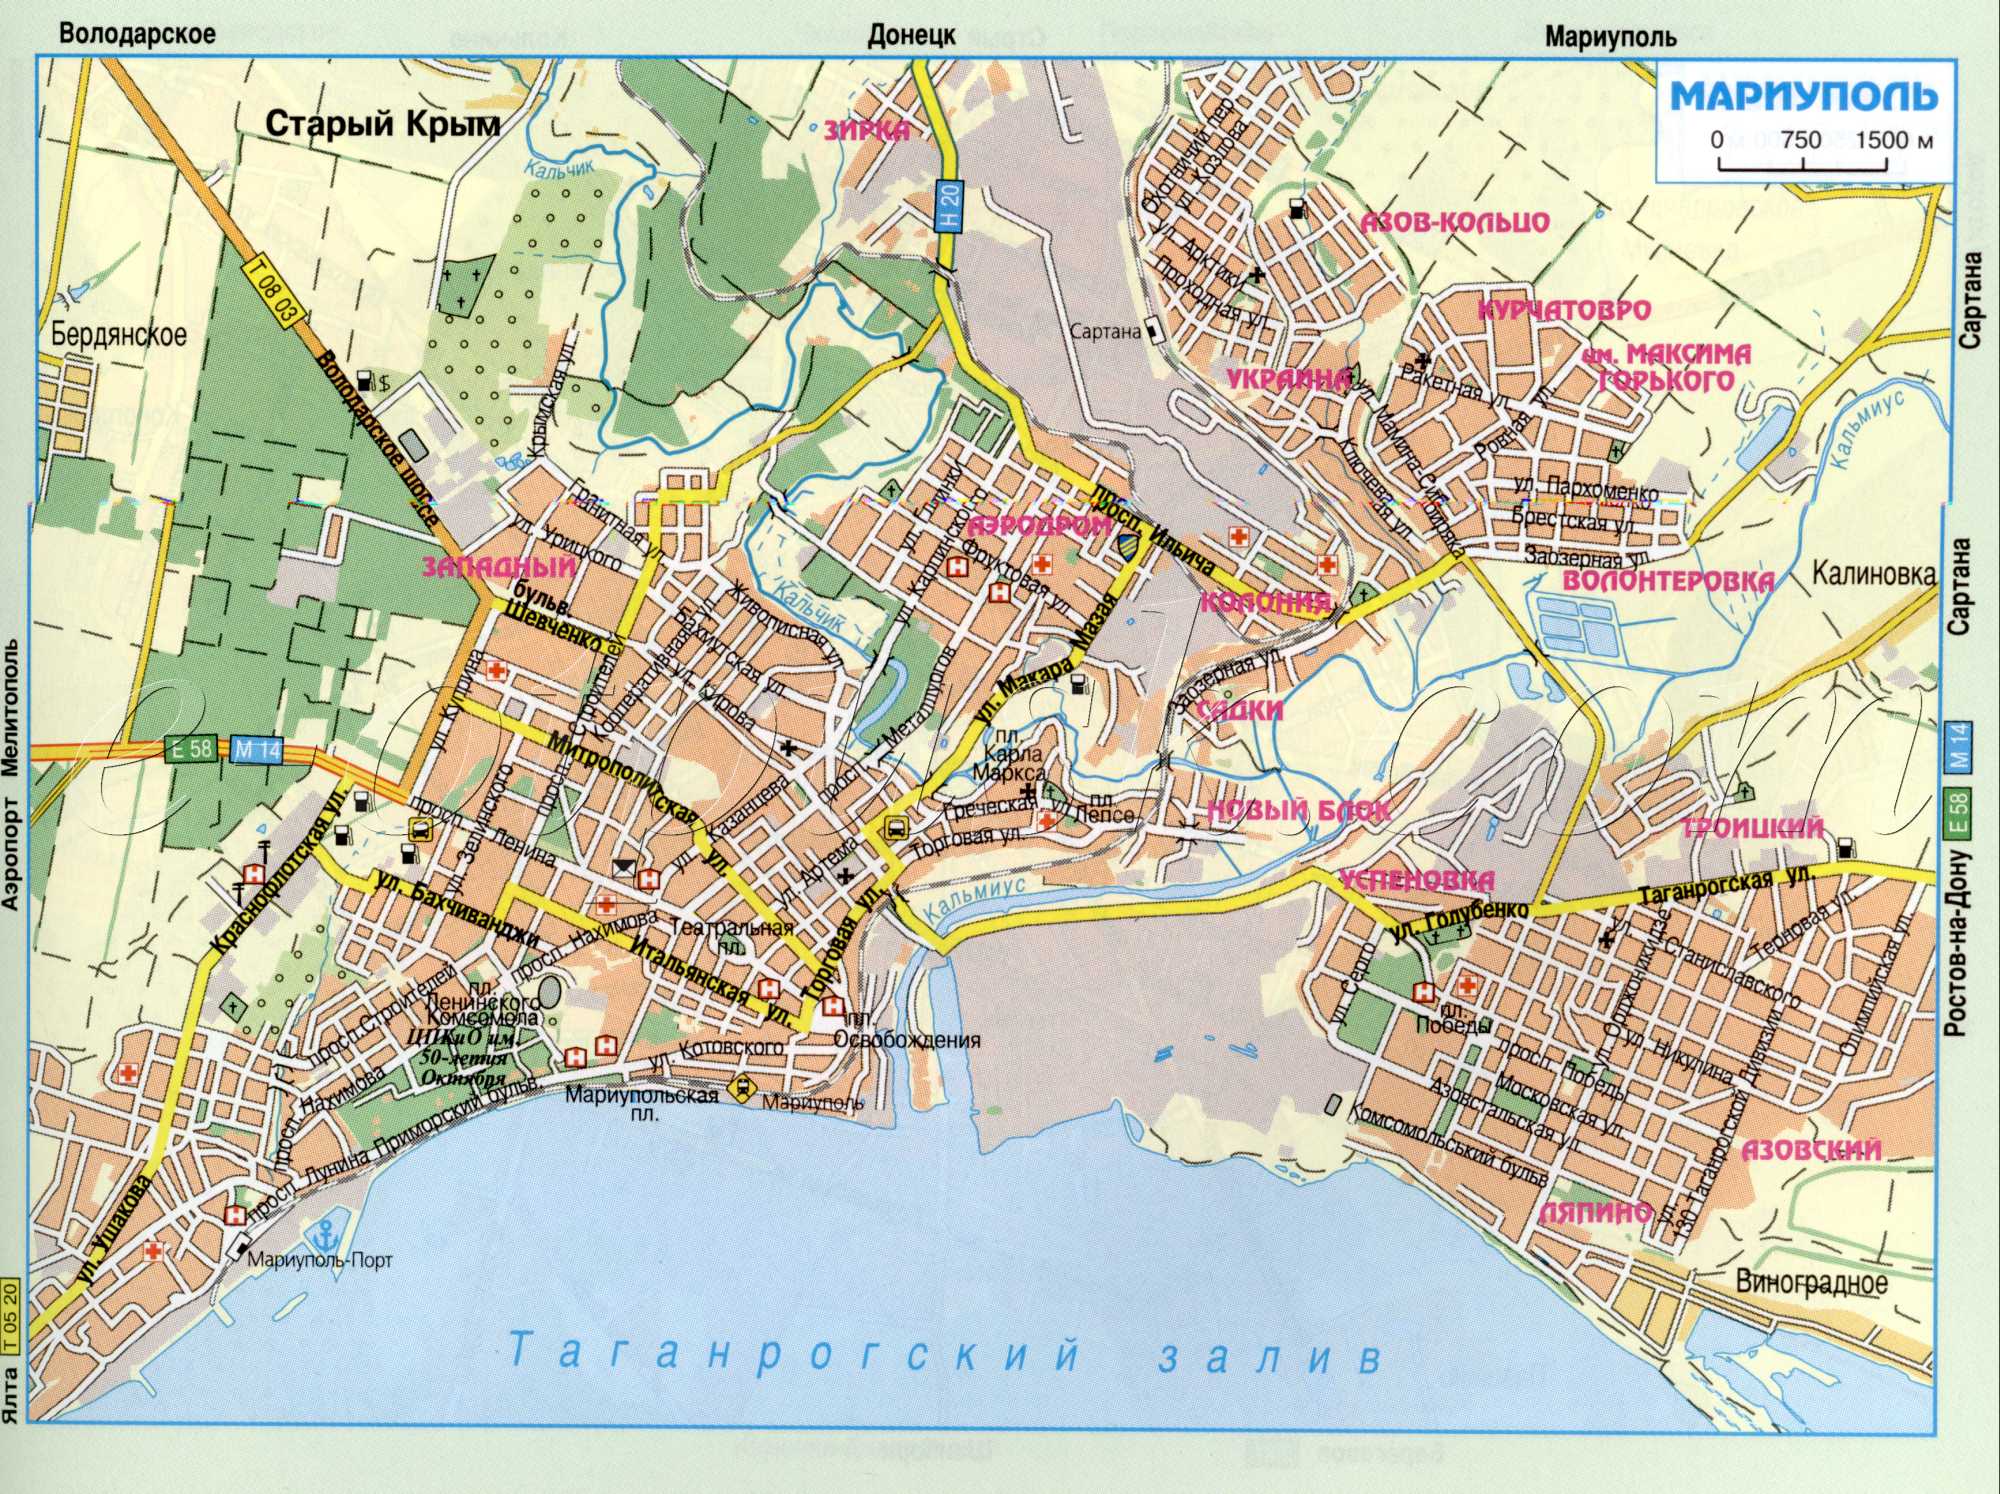 Карта Маріуполя (колишній Жданов) з атласу автомобільних доріг. Схема транзитного проїзду через м.Маріуполь Донецької області. завантажити безкоштовно